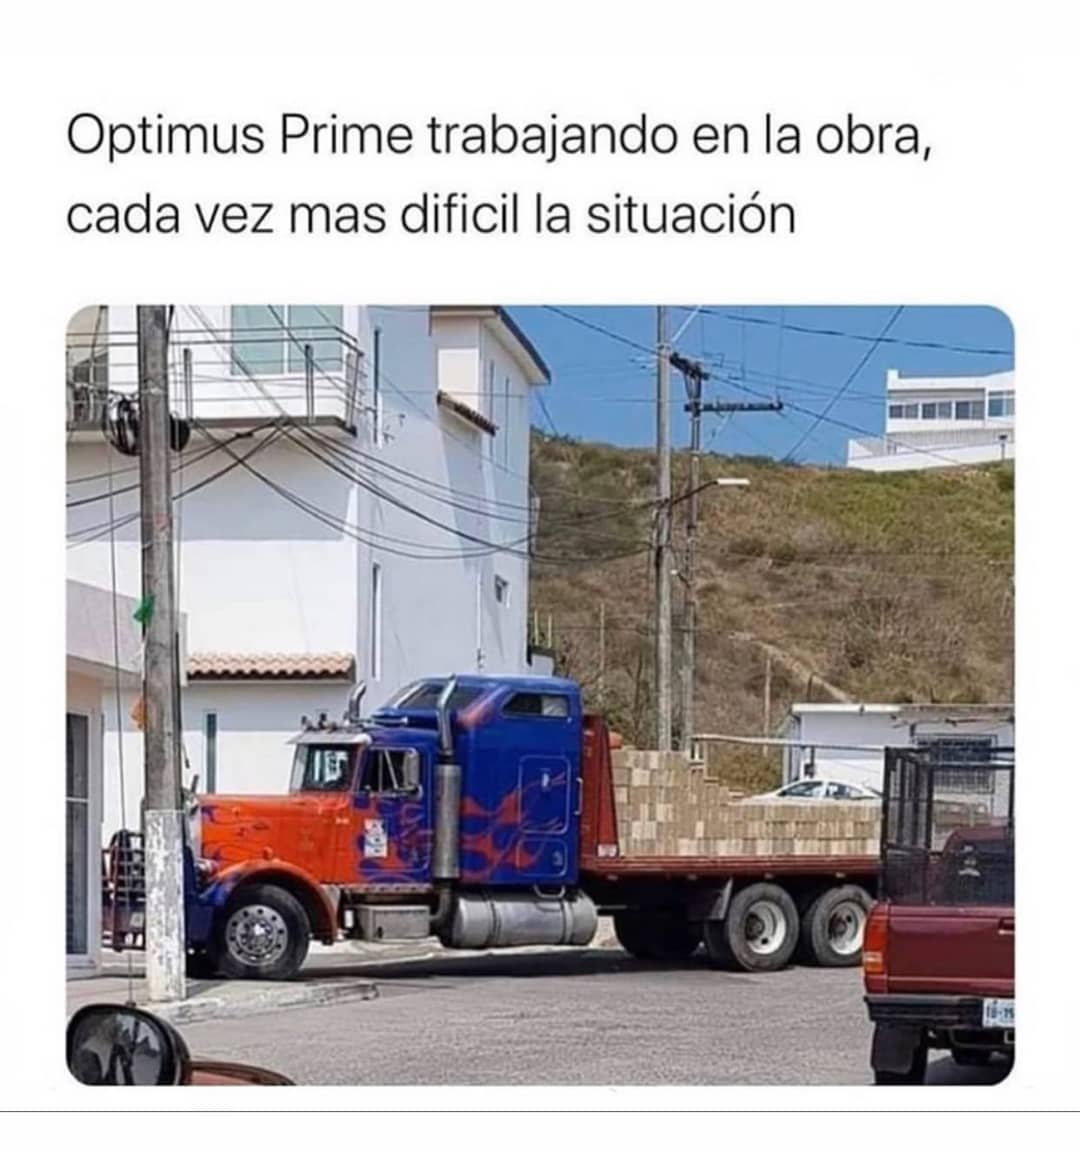 Optimus Prime trabajando en la obra, cada vez mas difícil la situación.